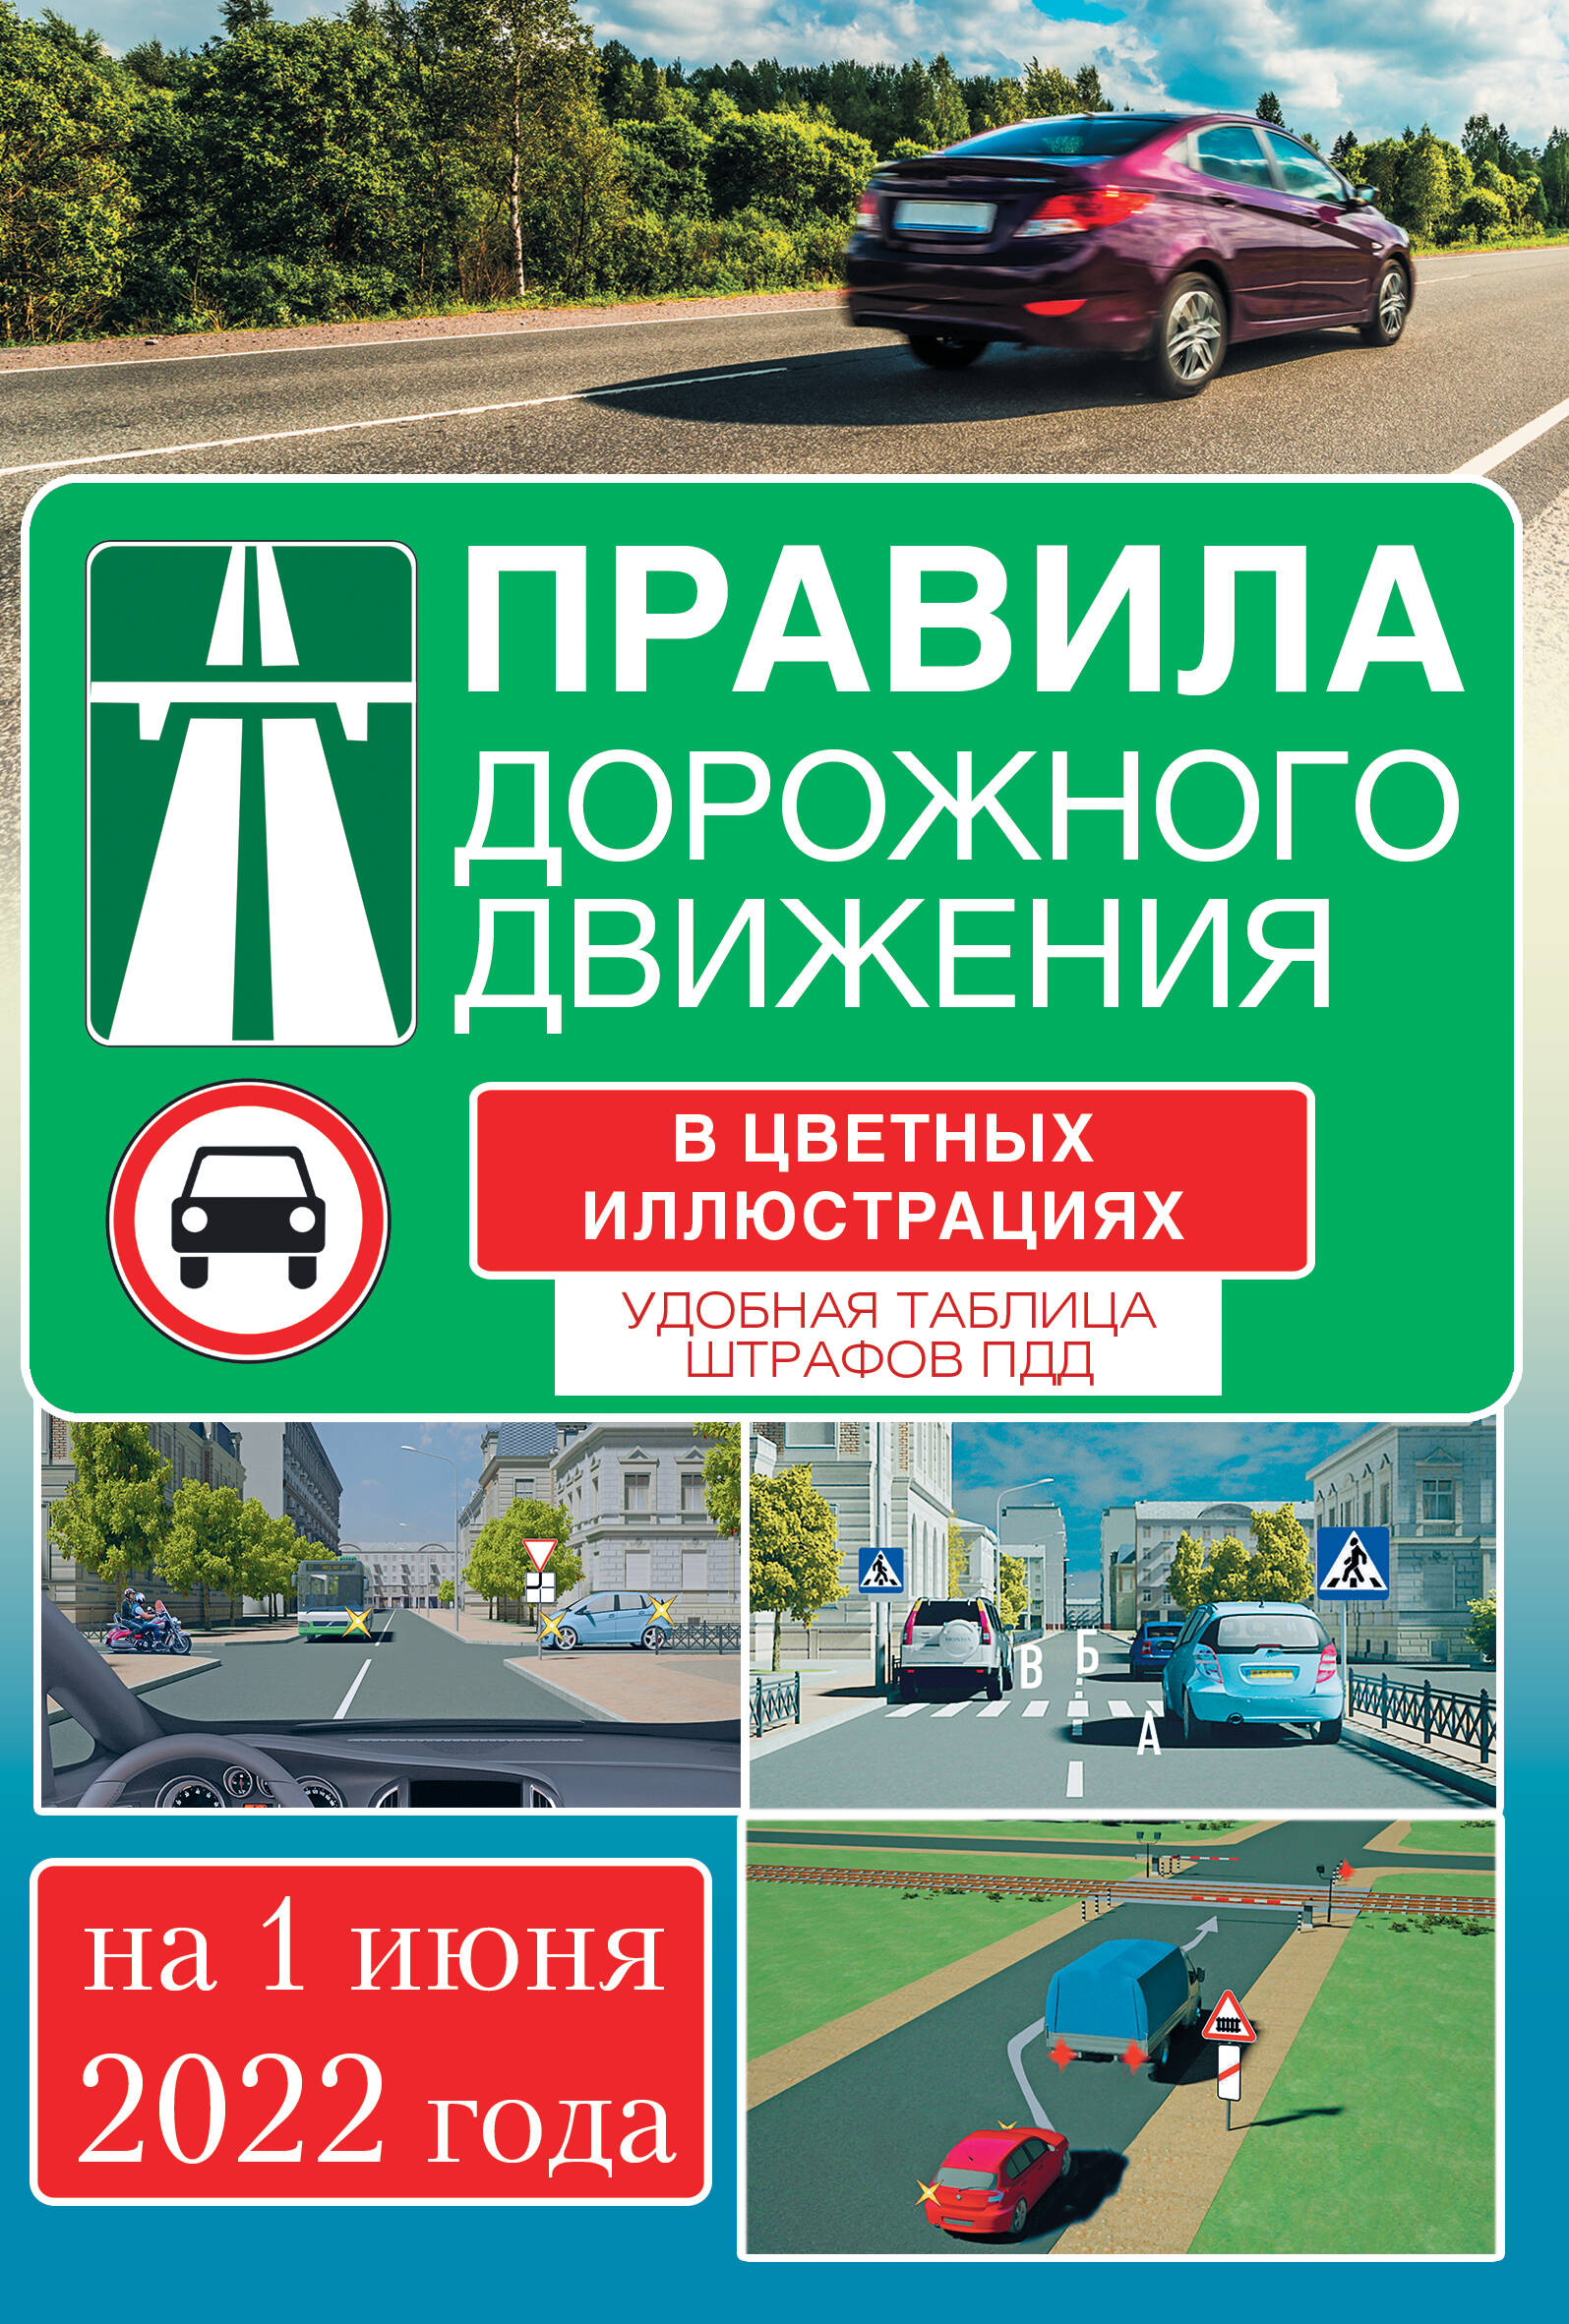  Правила дорожного движения на 1 апреля 2022 года в цветных иллюстрациях. Удобная таблица штрафов ПДД - страница 0